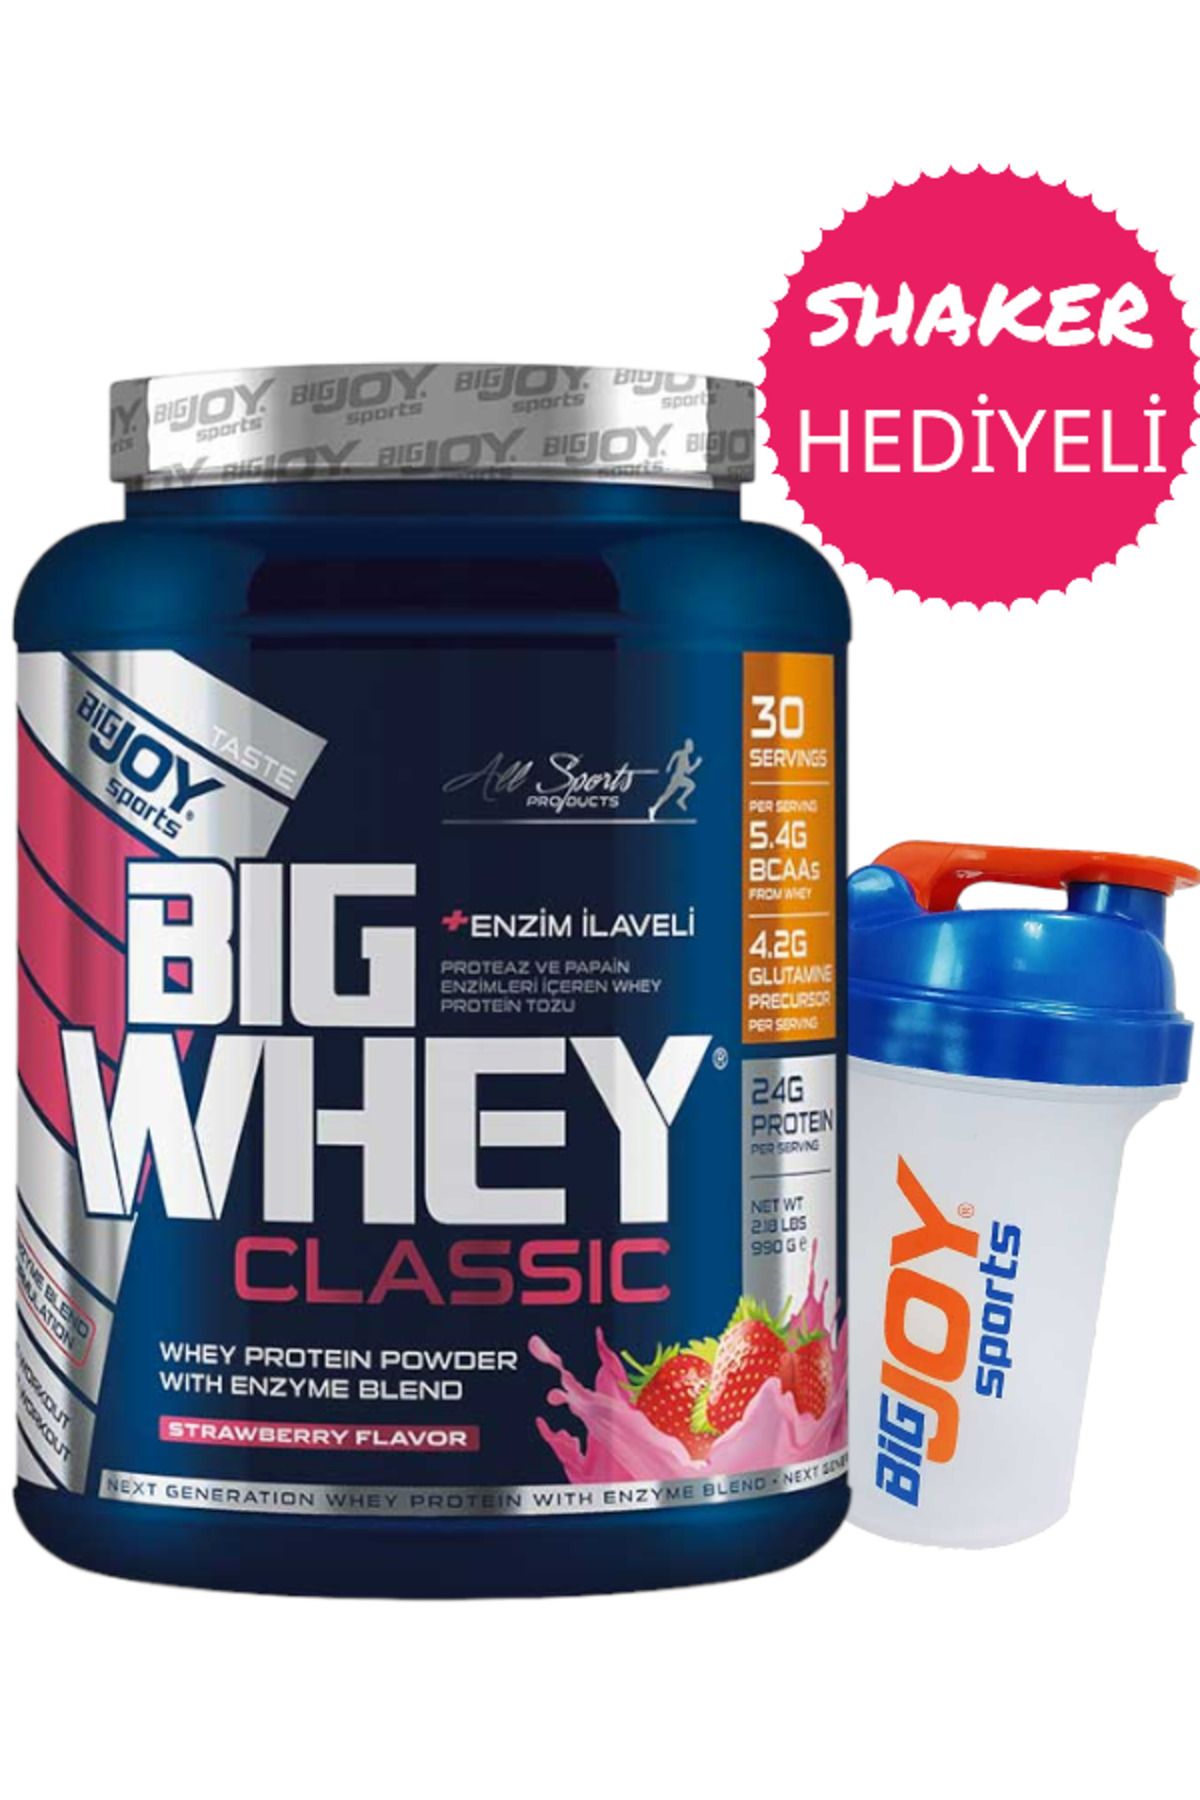 Bigjoy Sports Big Whey Classic Whey Protein Tozu Çilek Aroma 990g - 30 Servis - Shaker 500 ml